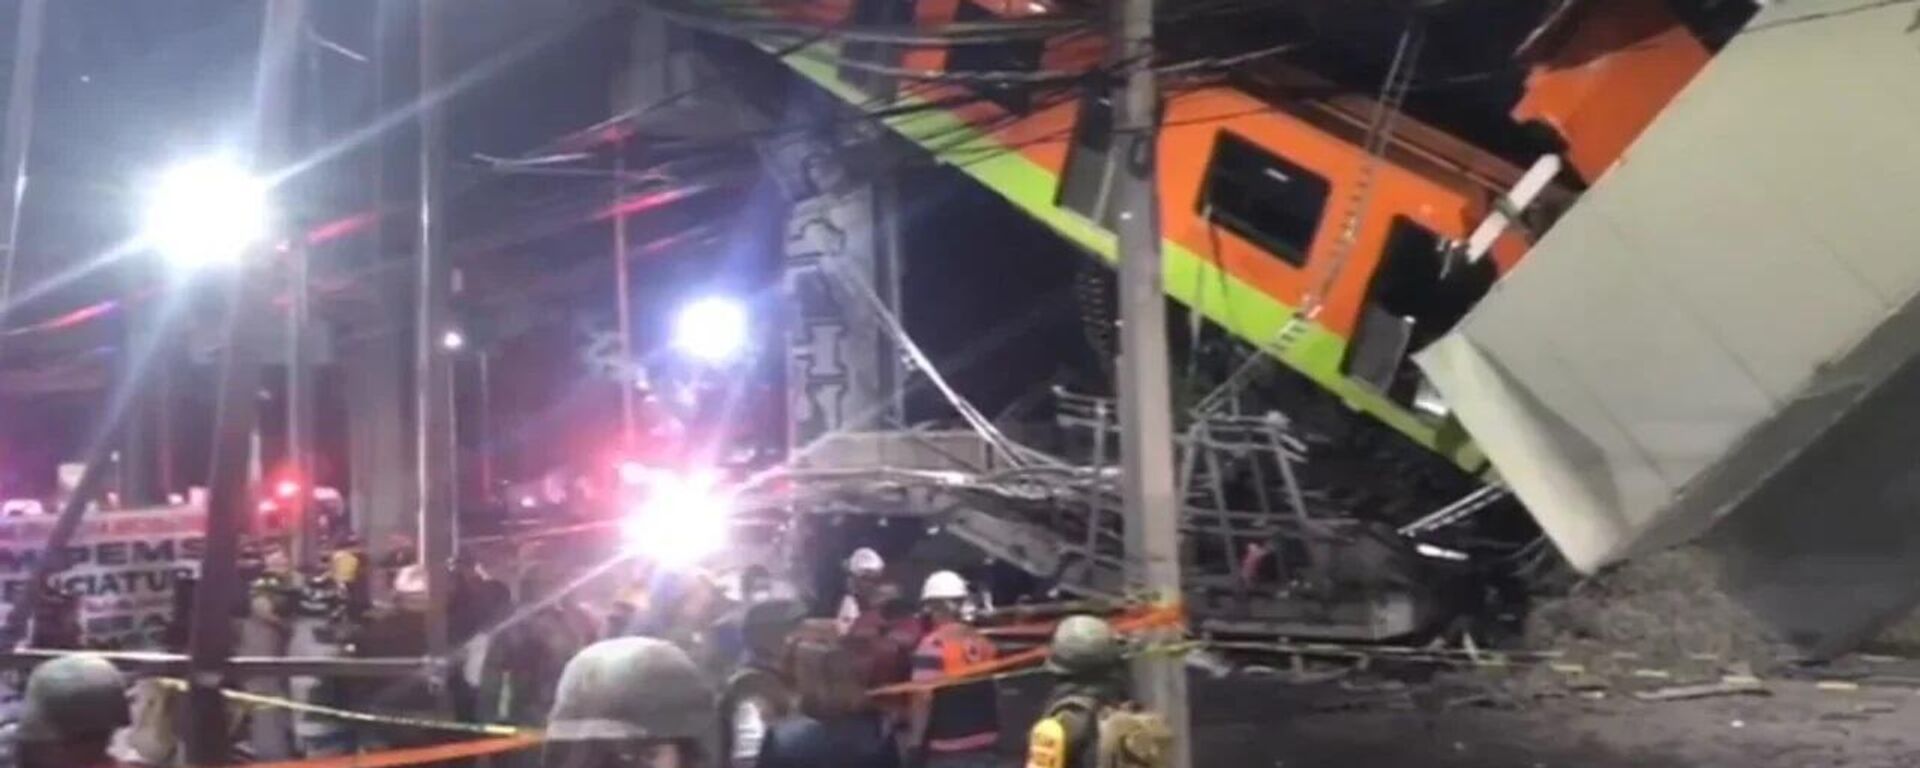 Un dron capta el mortal derrumbe de un puente del metro en México - Sputnik Mundo, 1920, 04.05.2021